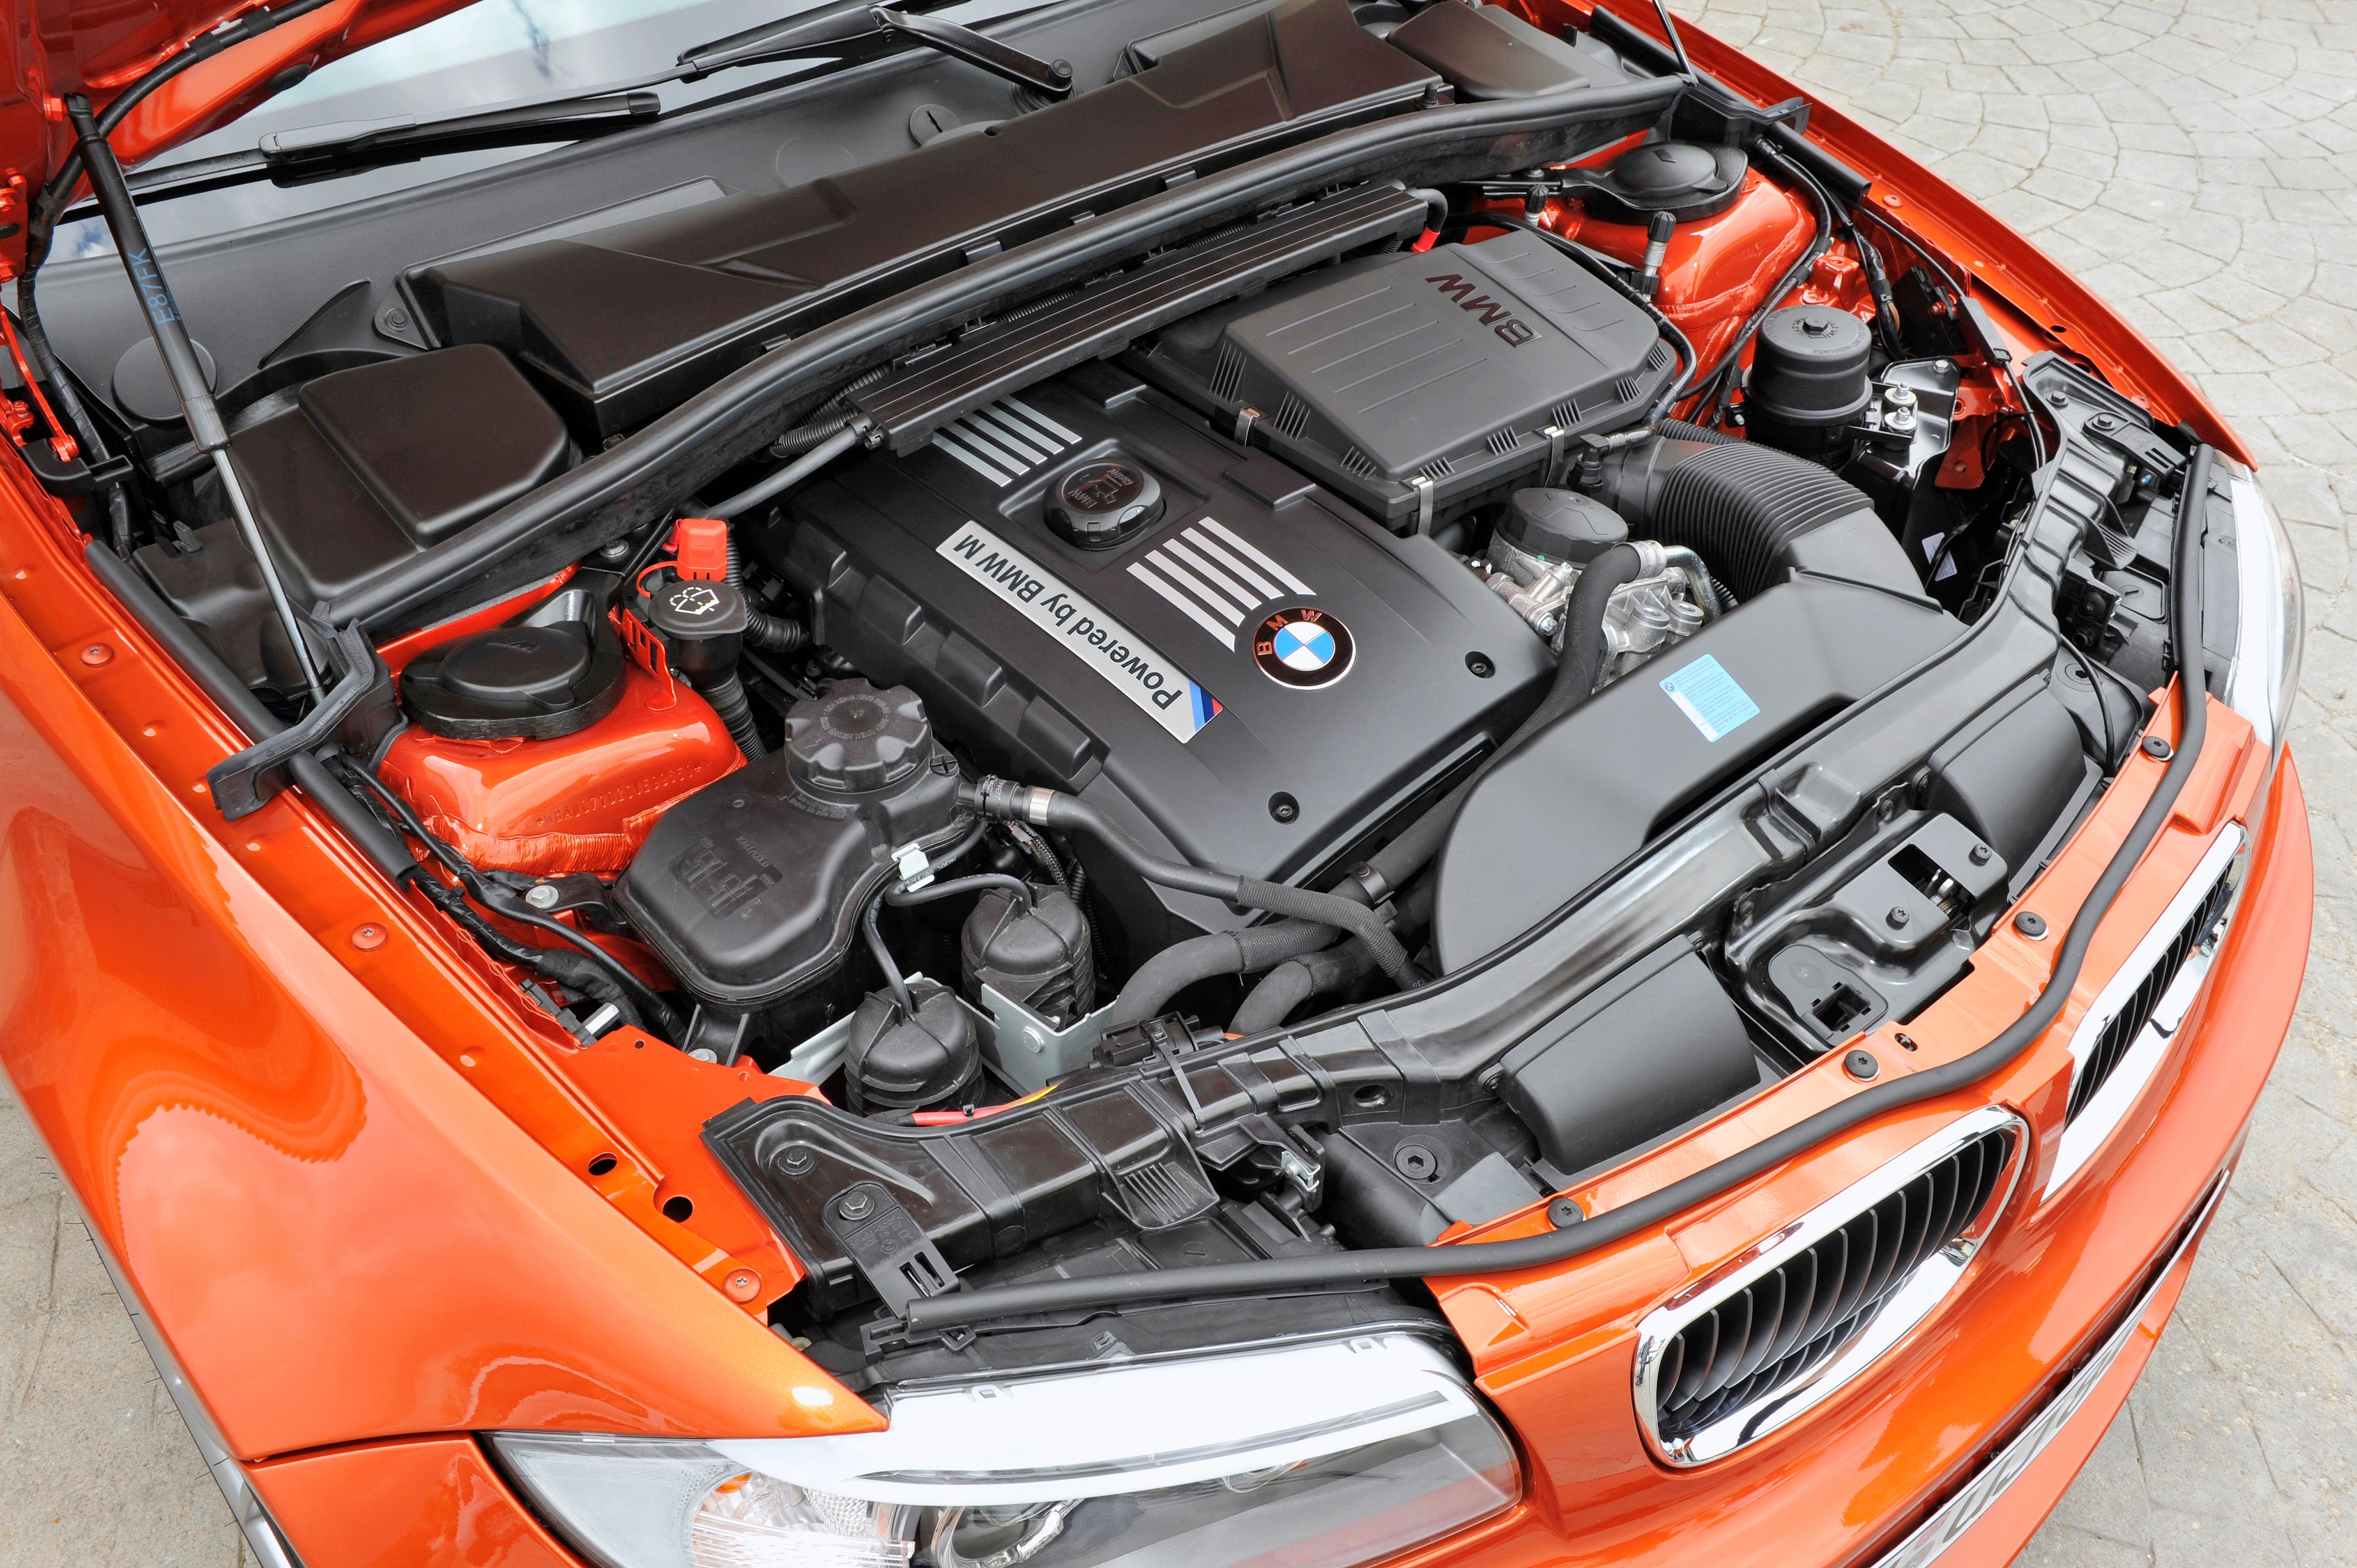 The BMW N54 engine.